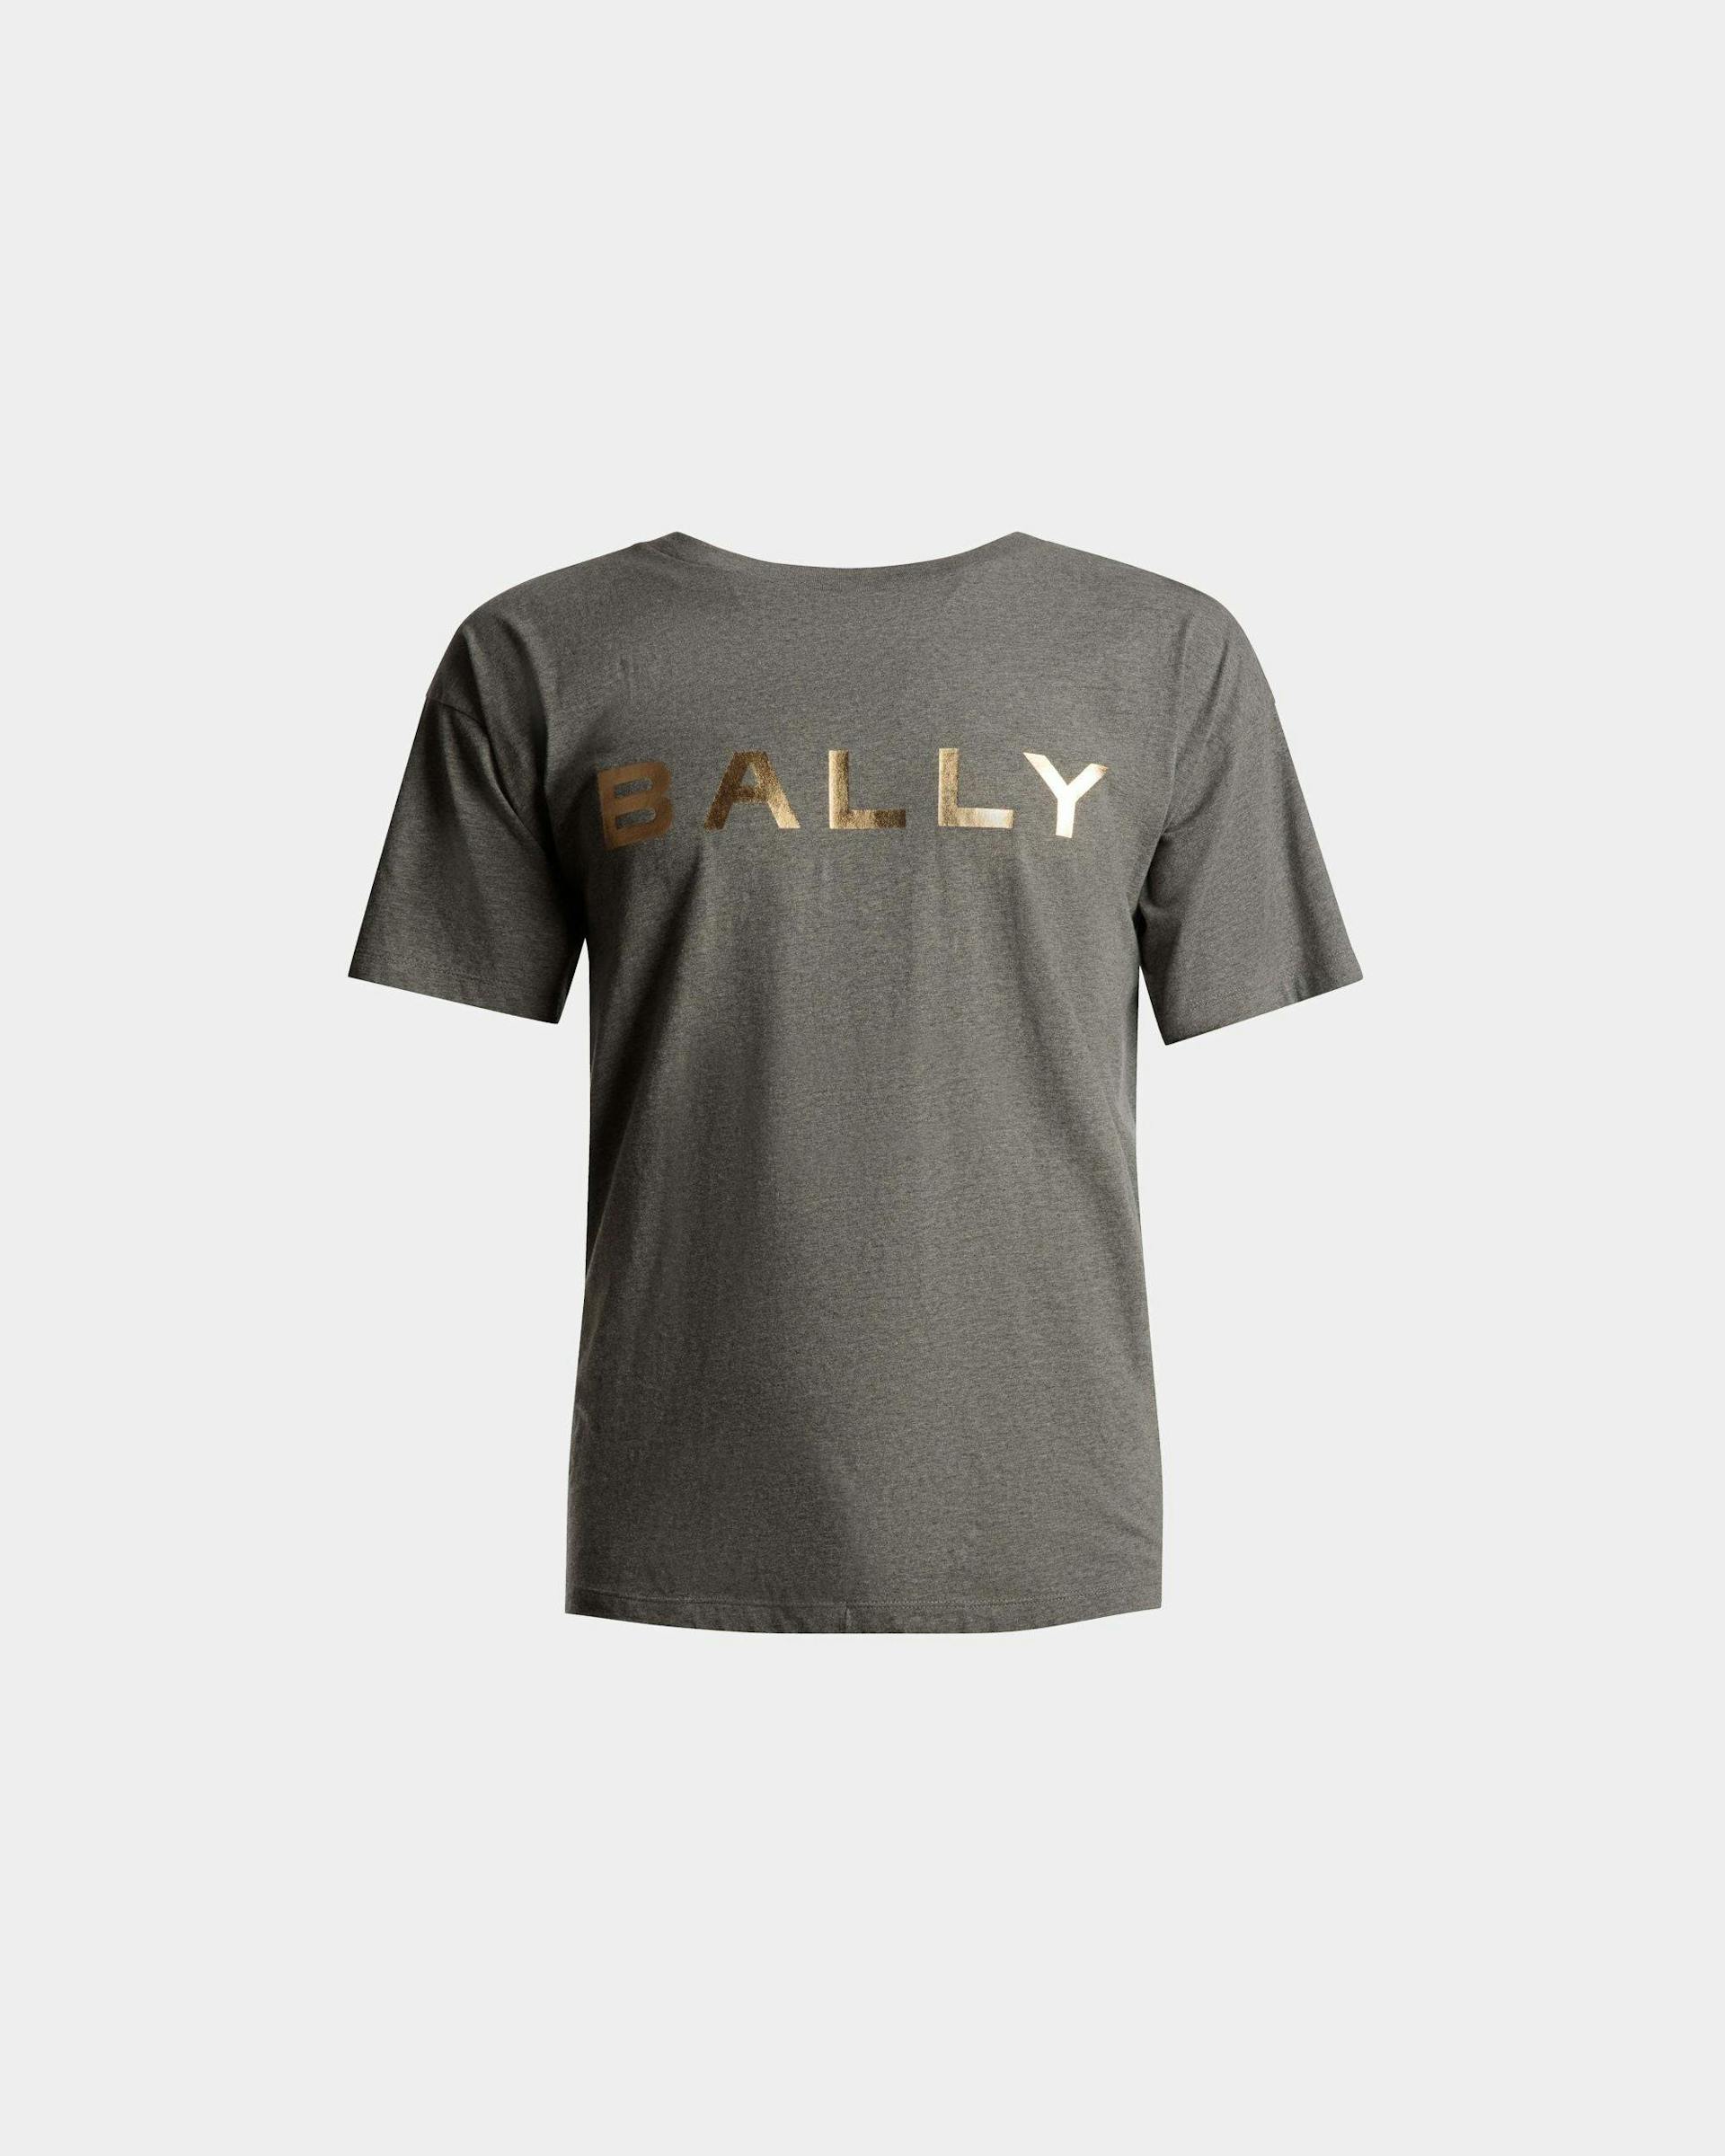 T-Shirt Mit Logo Aus Grau Melierter Baumwolle - Herren - Bally - 01